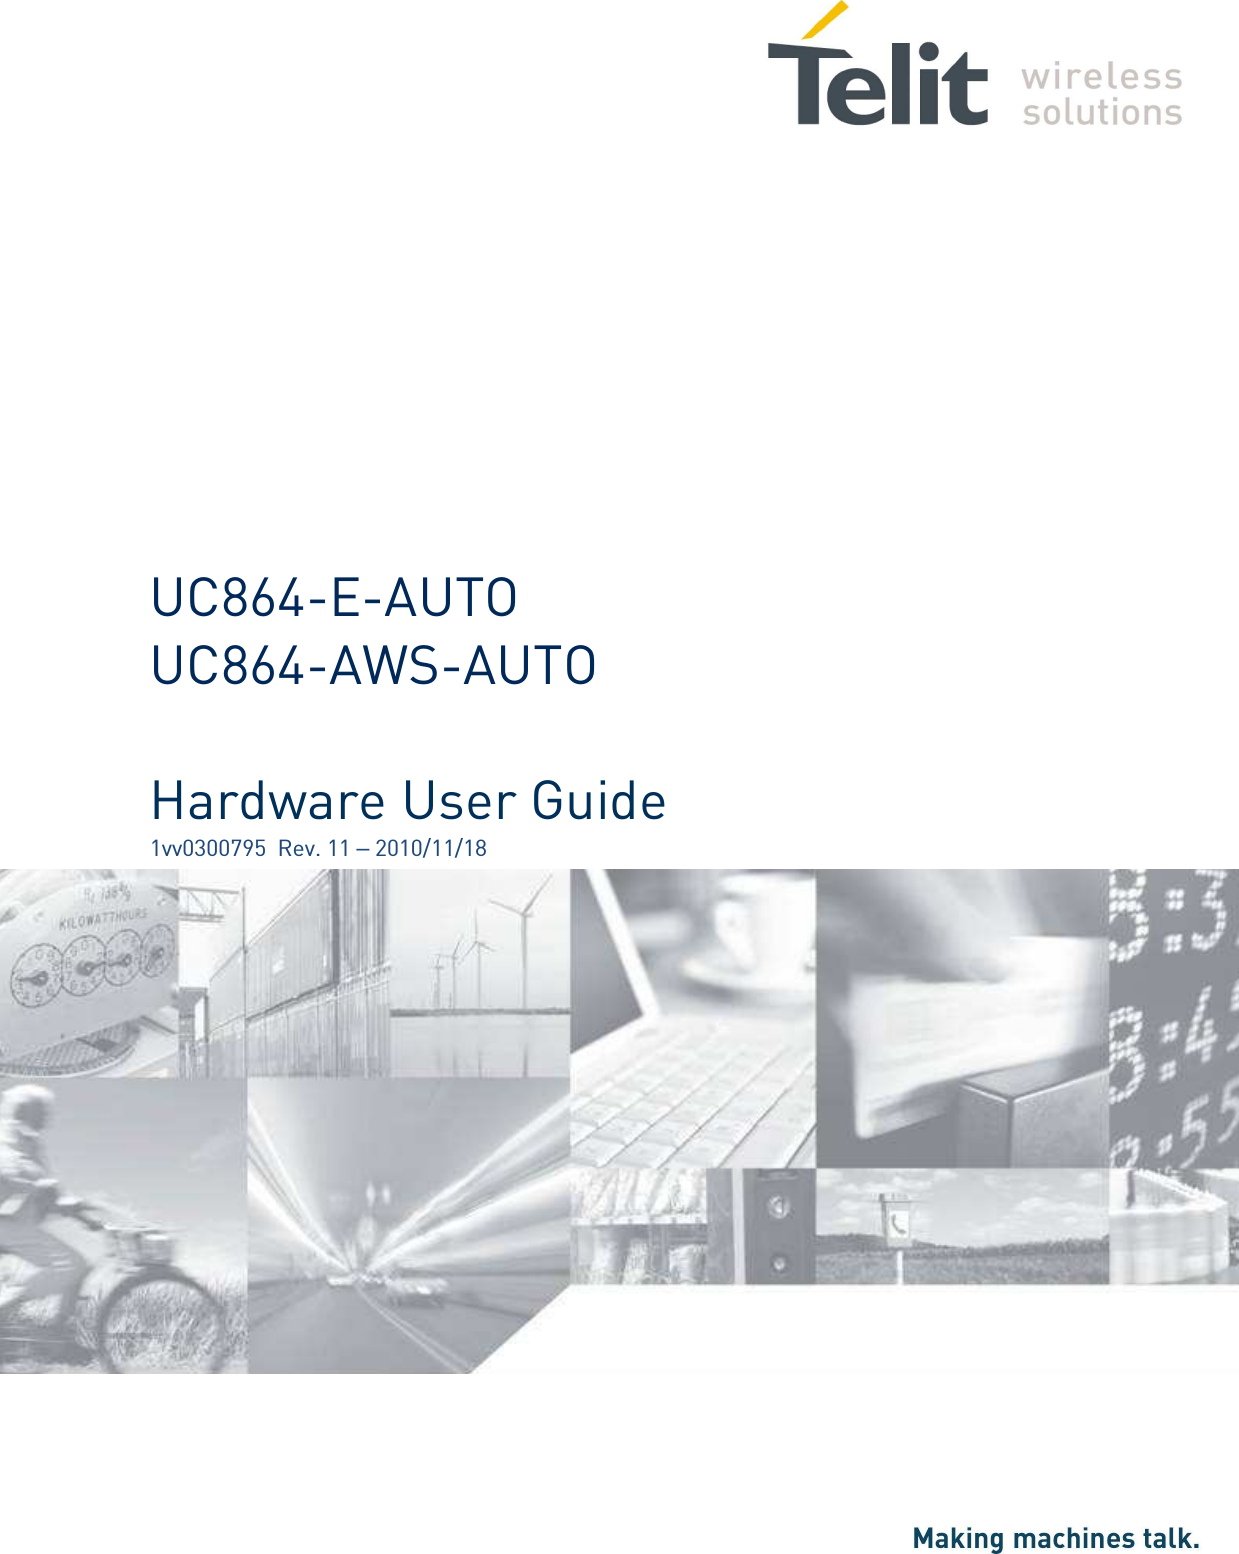                     UC864-E-AUTO UC864-AWS-AUTO  Hardware User Guide 1vv0300795  Rev. 11 – 2010/11/18   